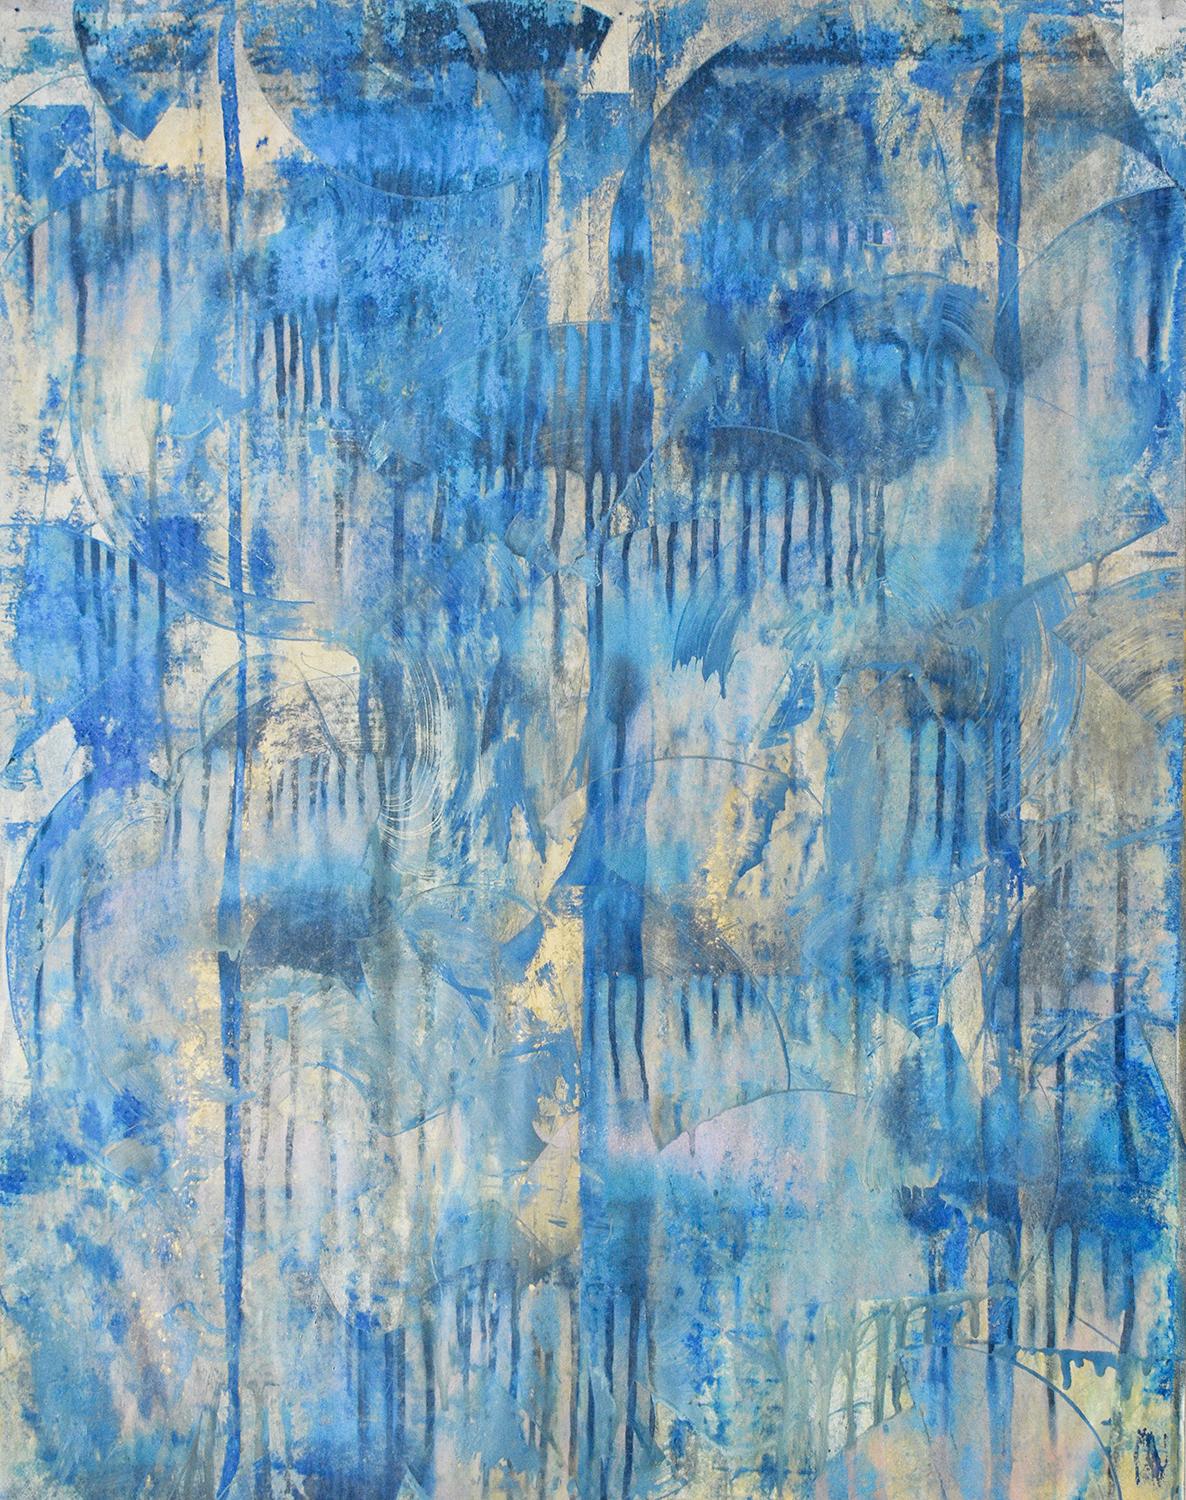 Unsolving of Illusion (peinture expressionniste abstraite en bleu et or clair)